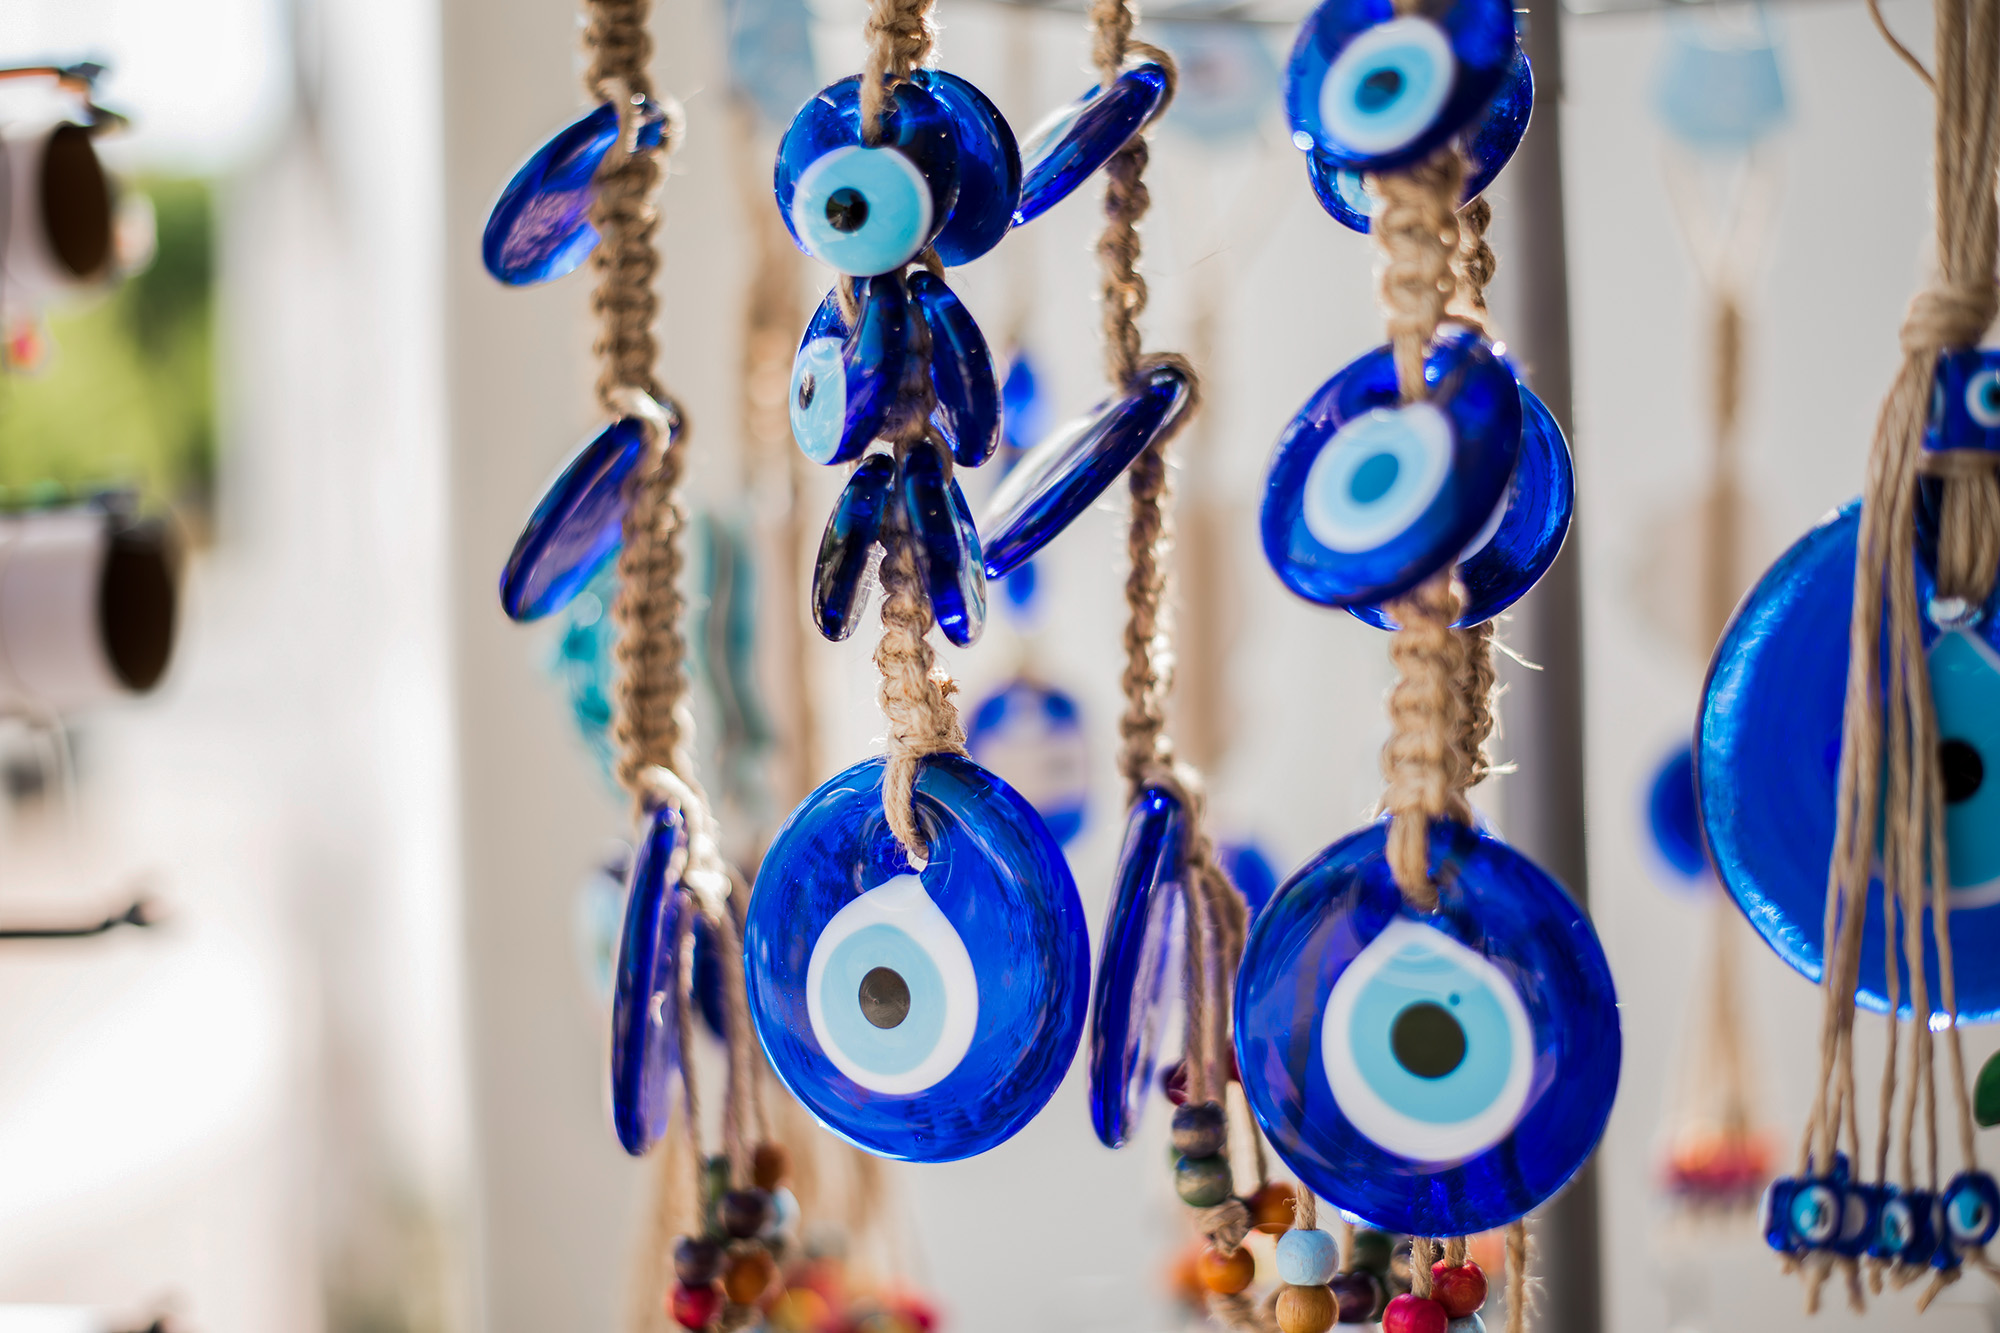 evil eye, typowe niebieskie oko, pamiątka z Grecji, popularny motyw, symbol znany z Grecji